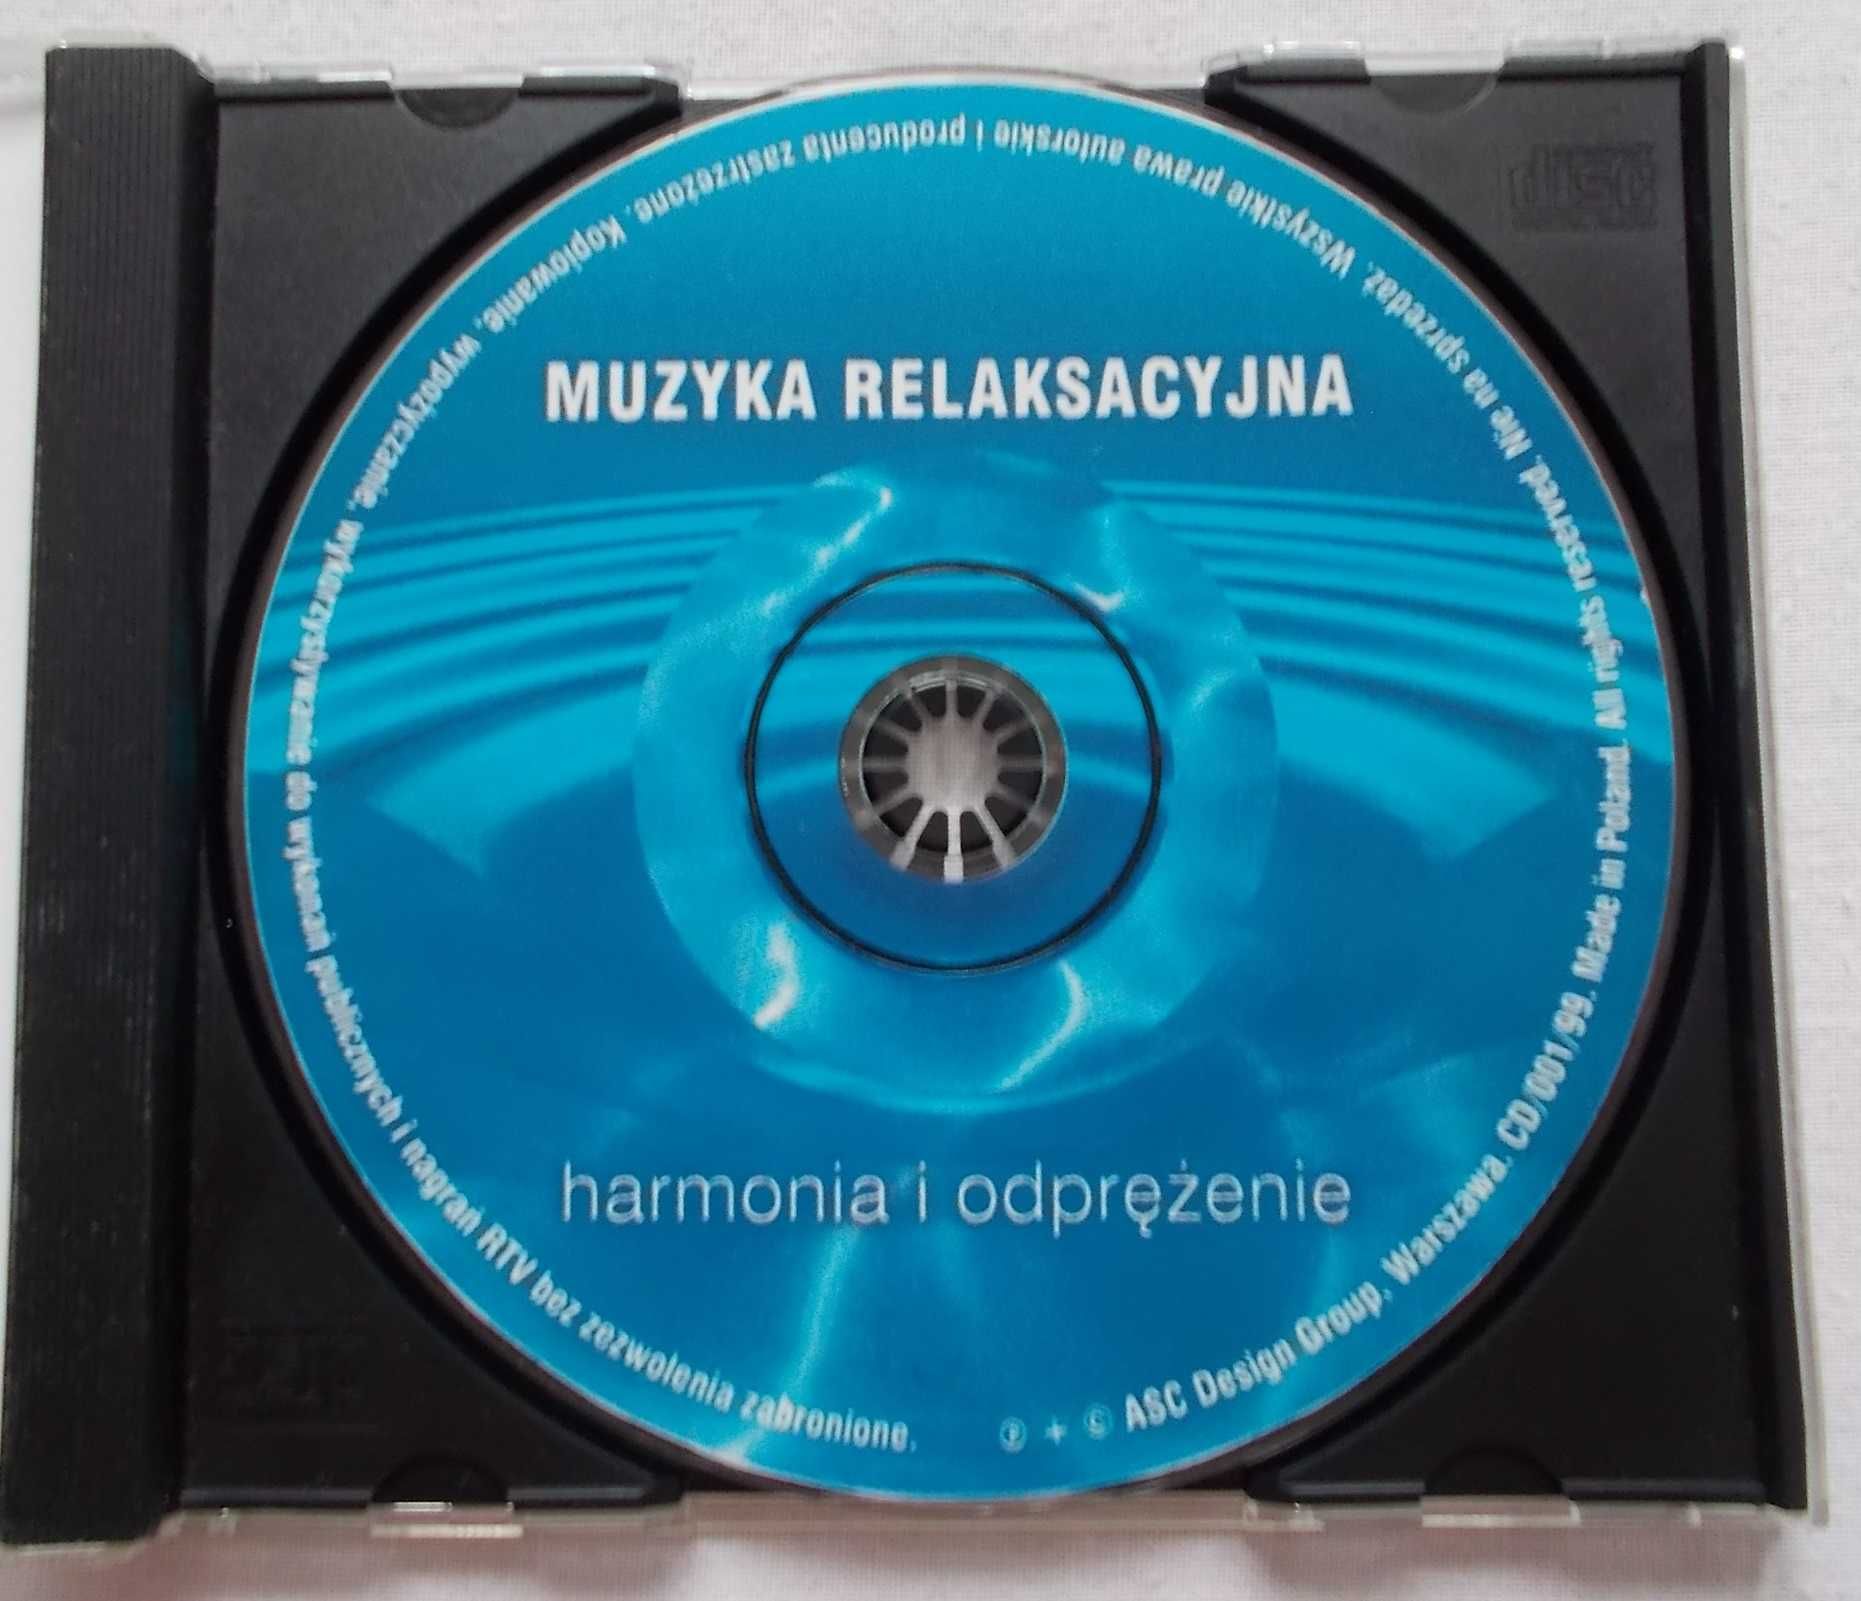 Płyta CD - Muzyka relaksacyjna - Harmonia i odprężenie - (1999r.)